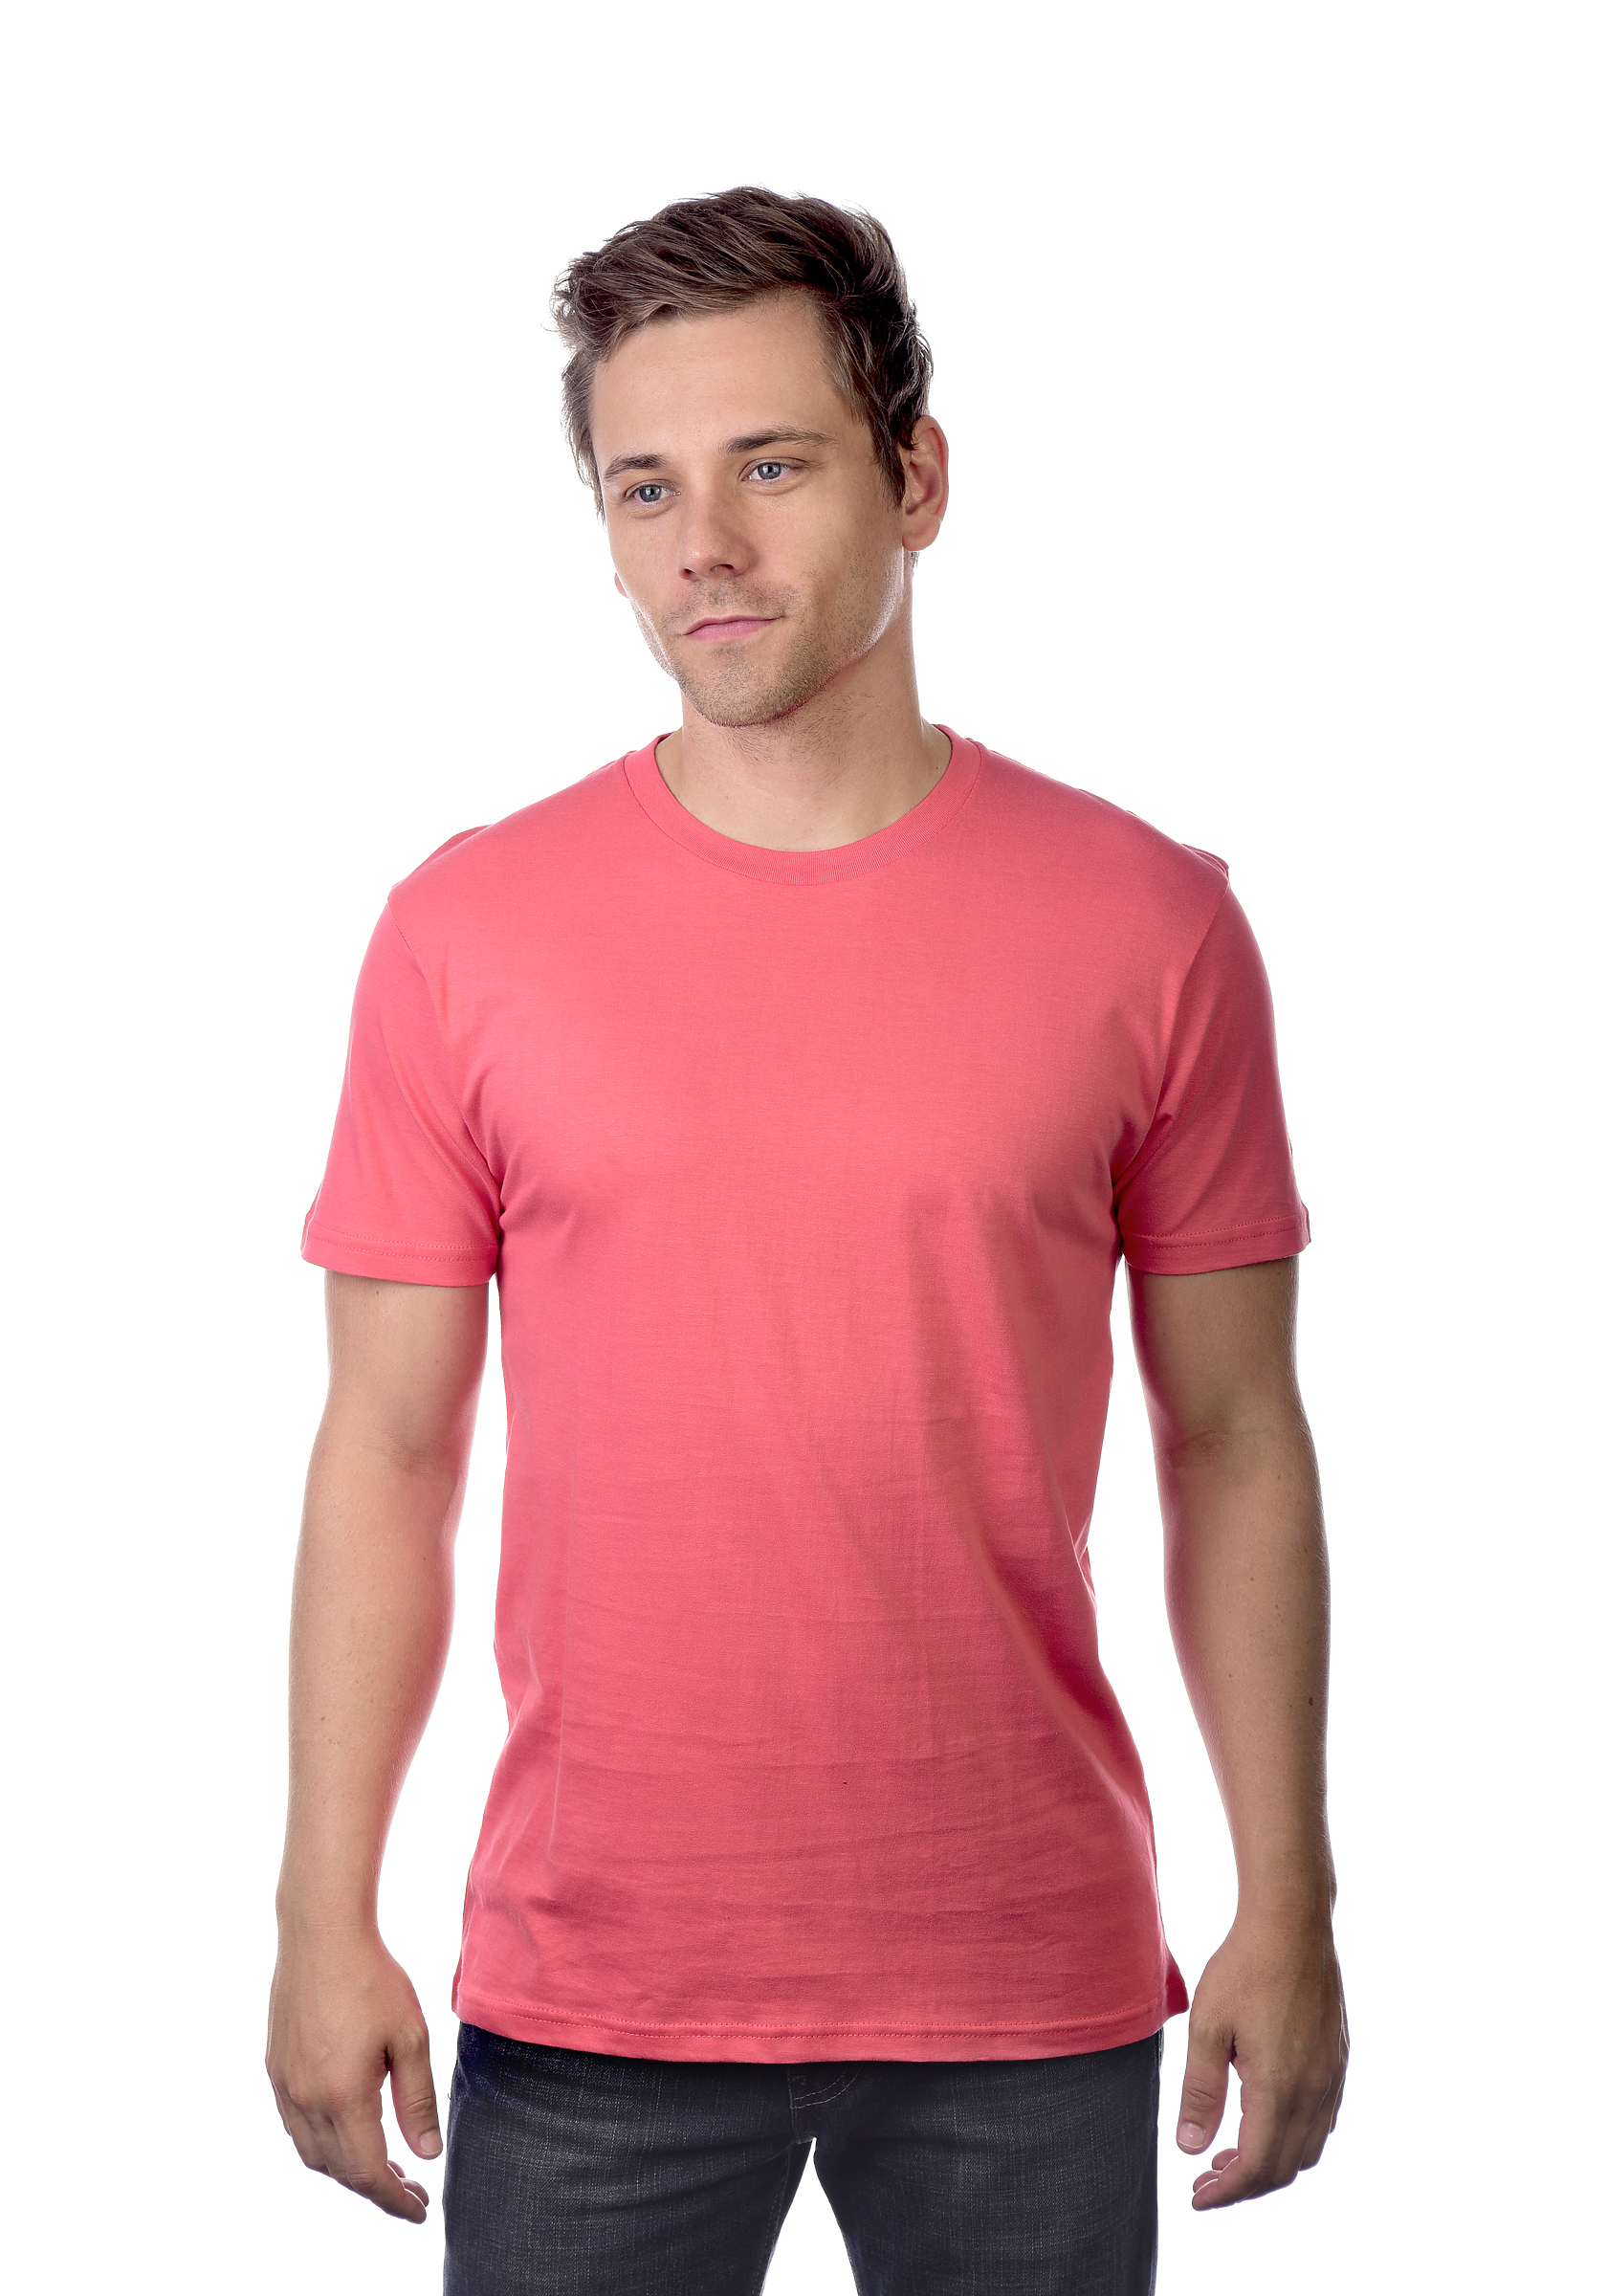 Unisex Short Sleeve T-Shirt | Cotton-Heritage